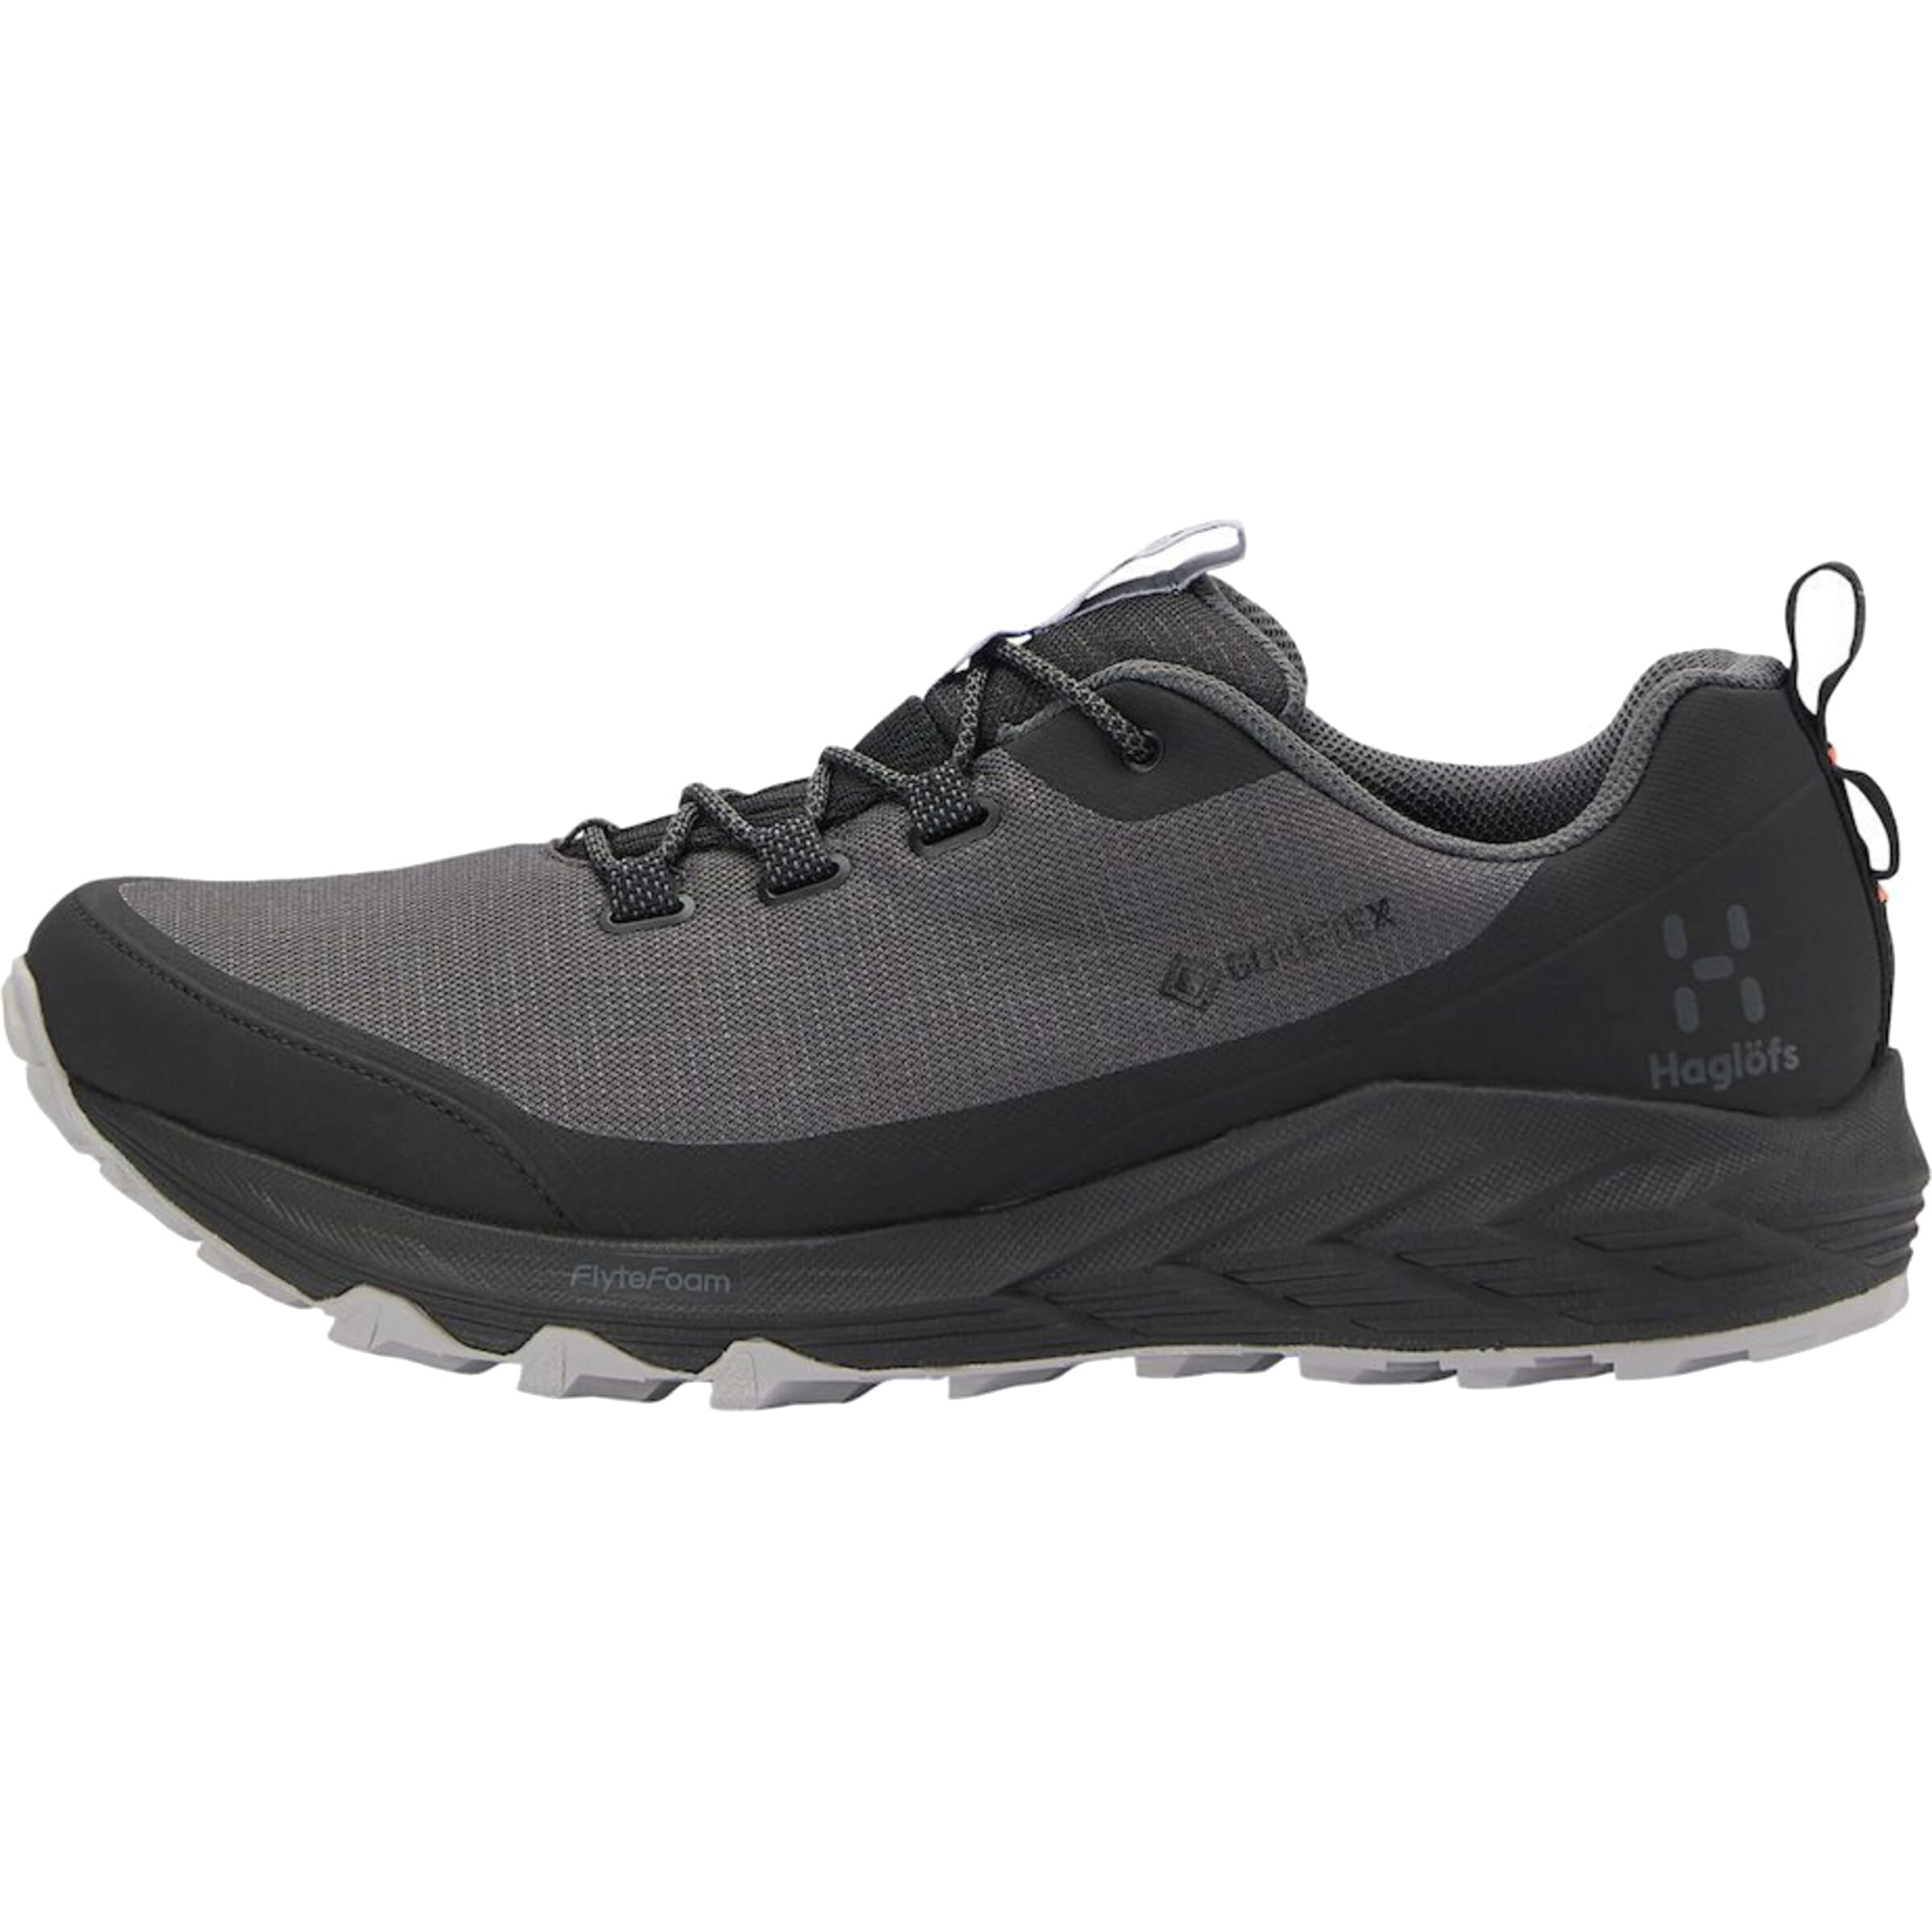 haglofs mens l.i.m fh gtx waterproof walking hiking shoes trainers - true black - uk 8.5